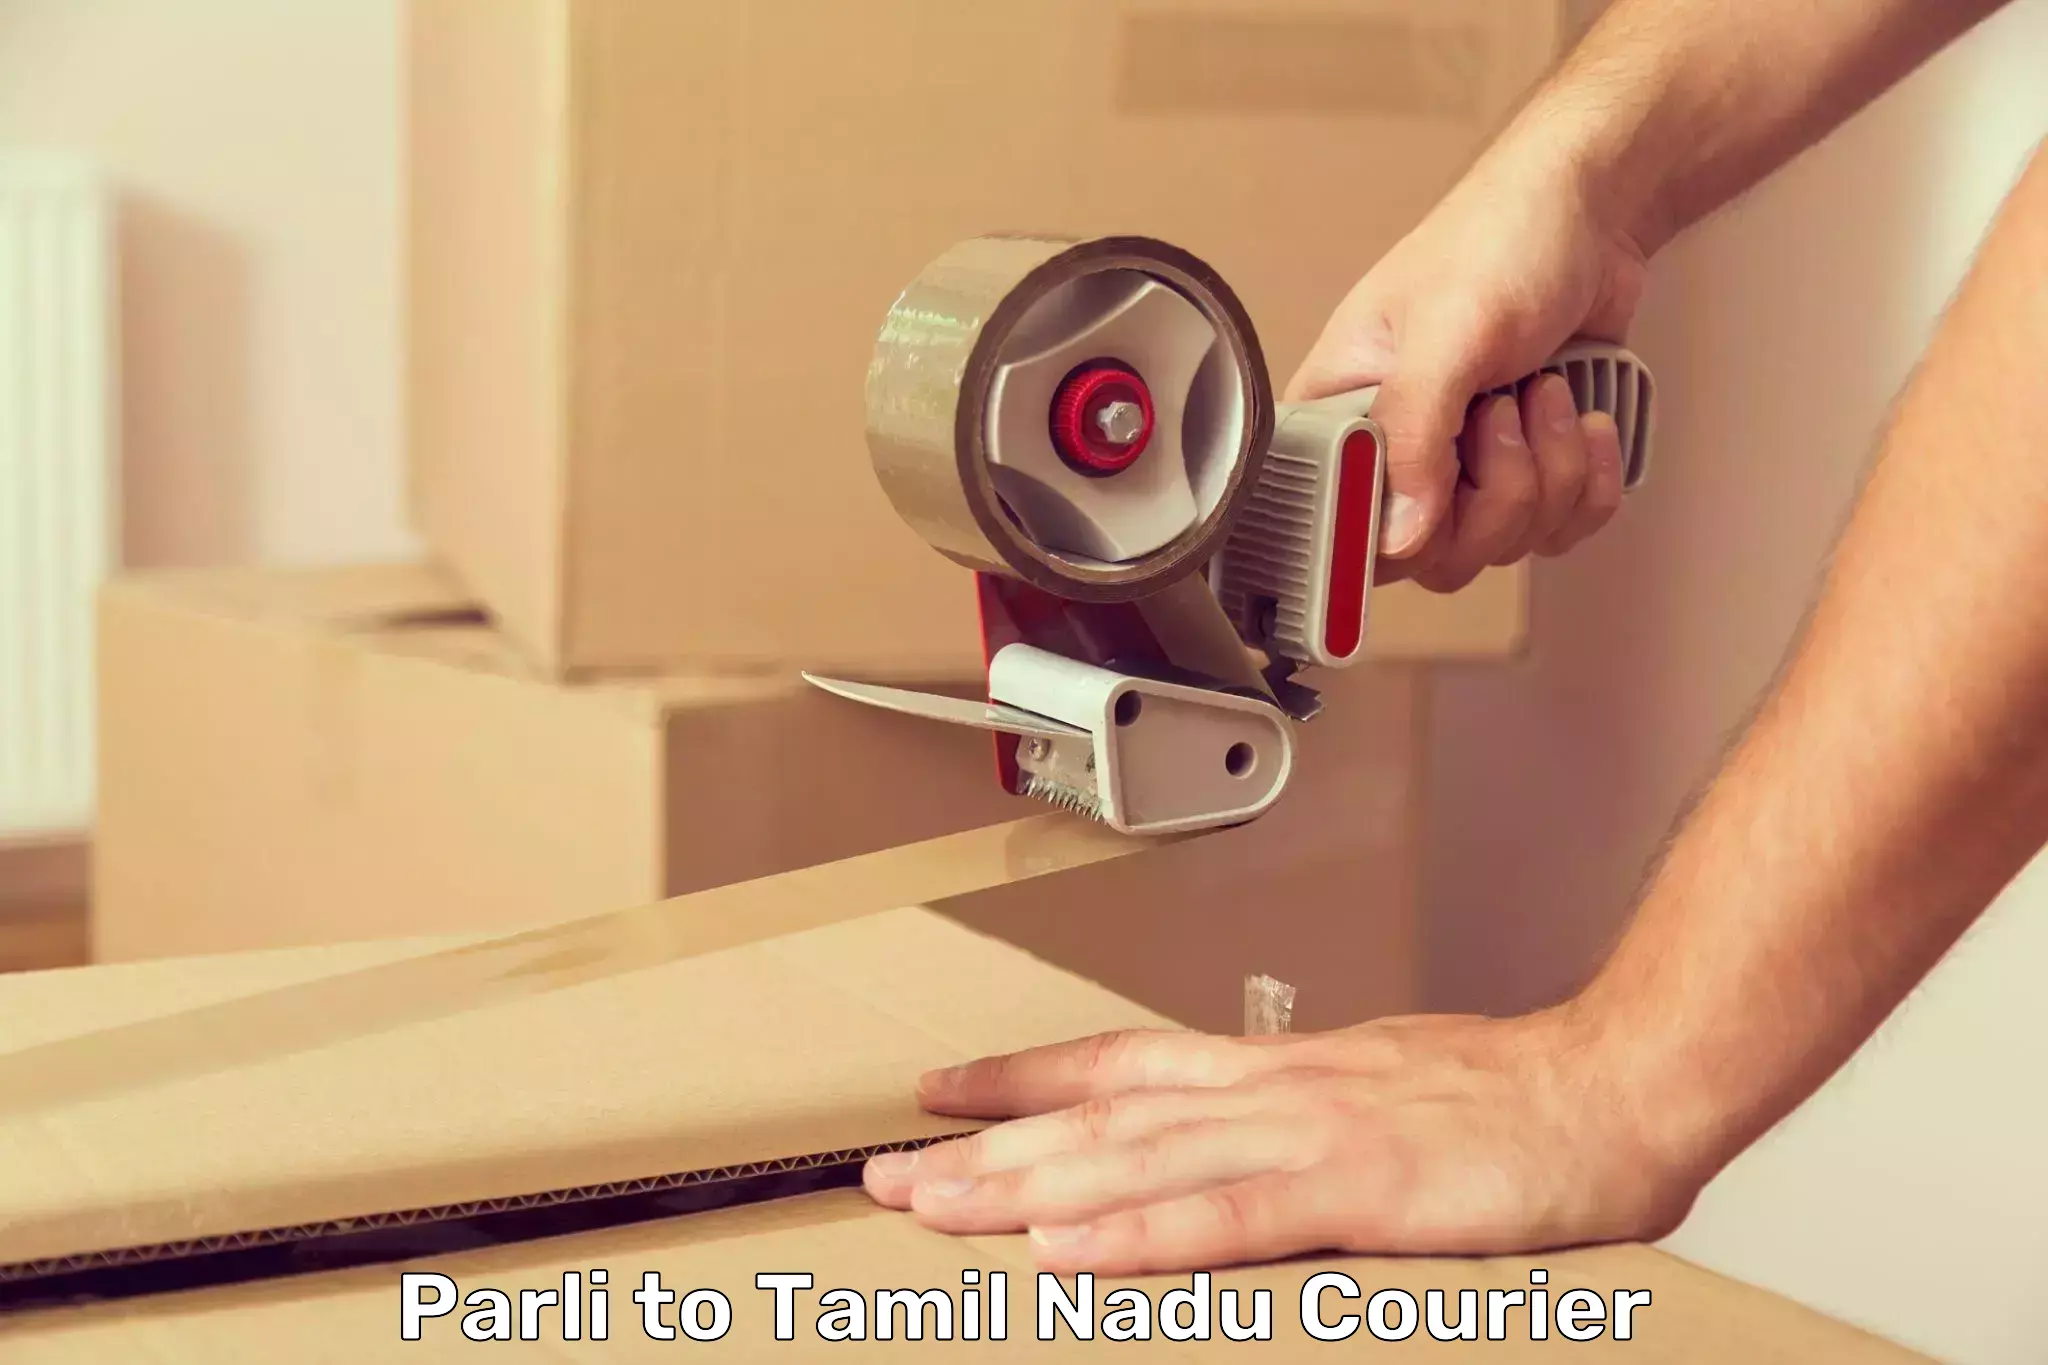 Efficient courier operations Parli to Tiruchirappalli